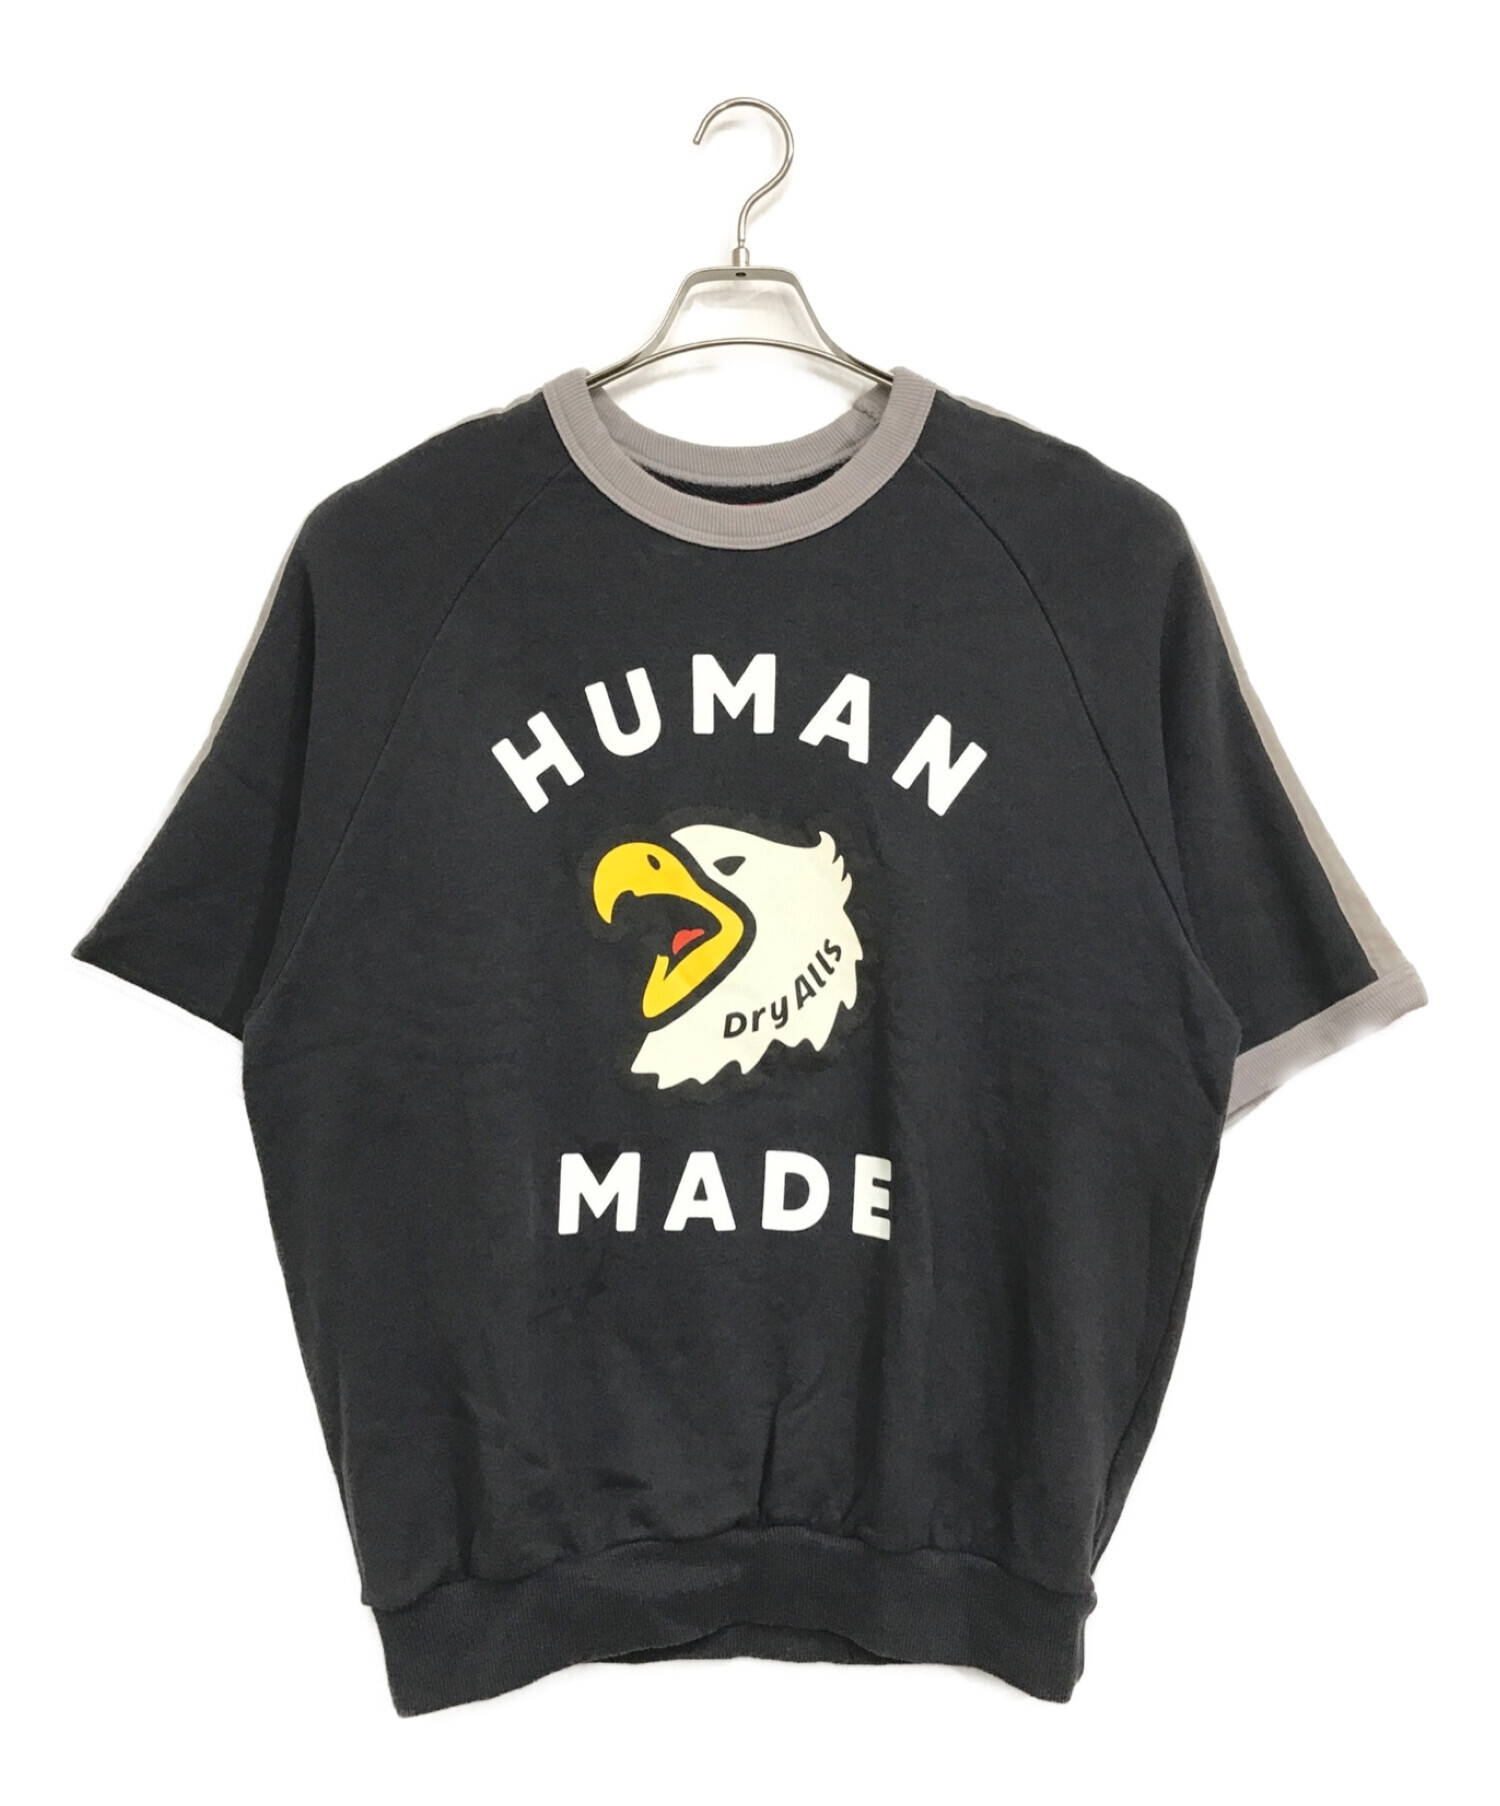 中古・古着通販】HUMAN MADE (ヒューマンメイド) Human Made S/S 